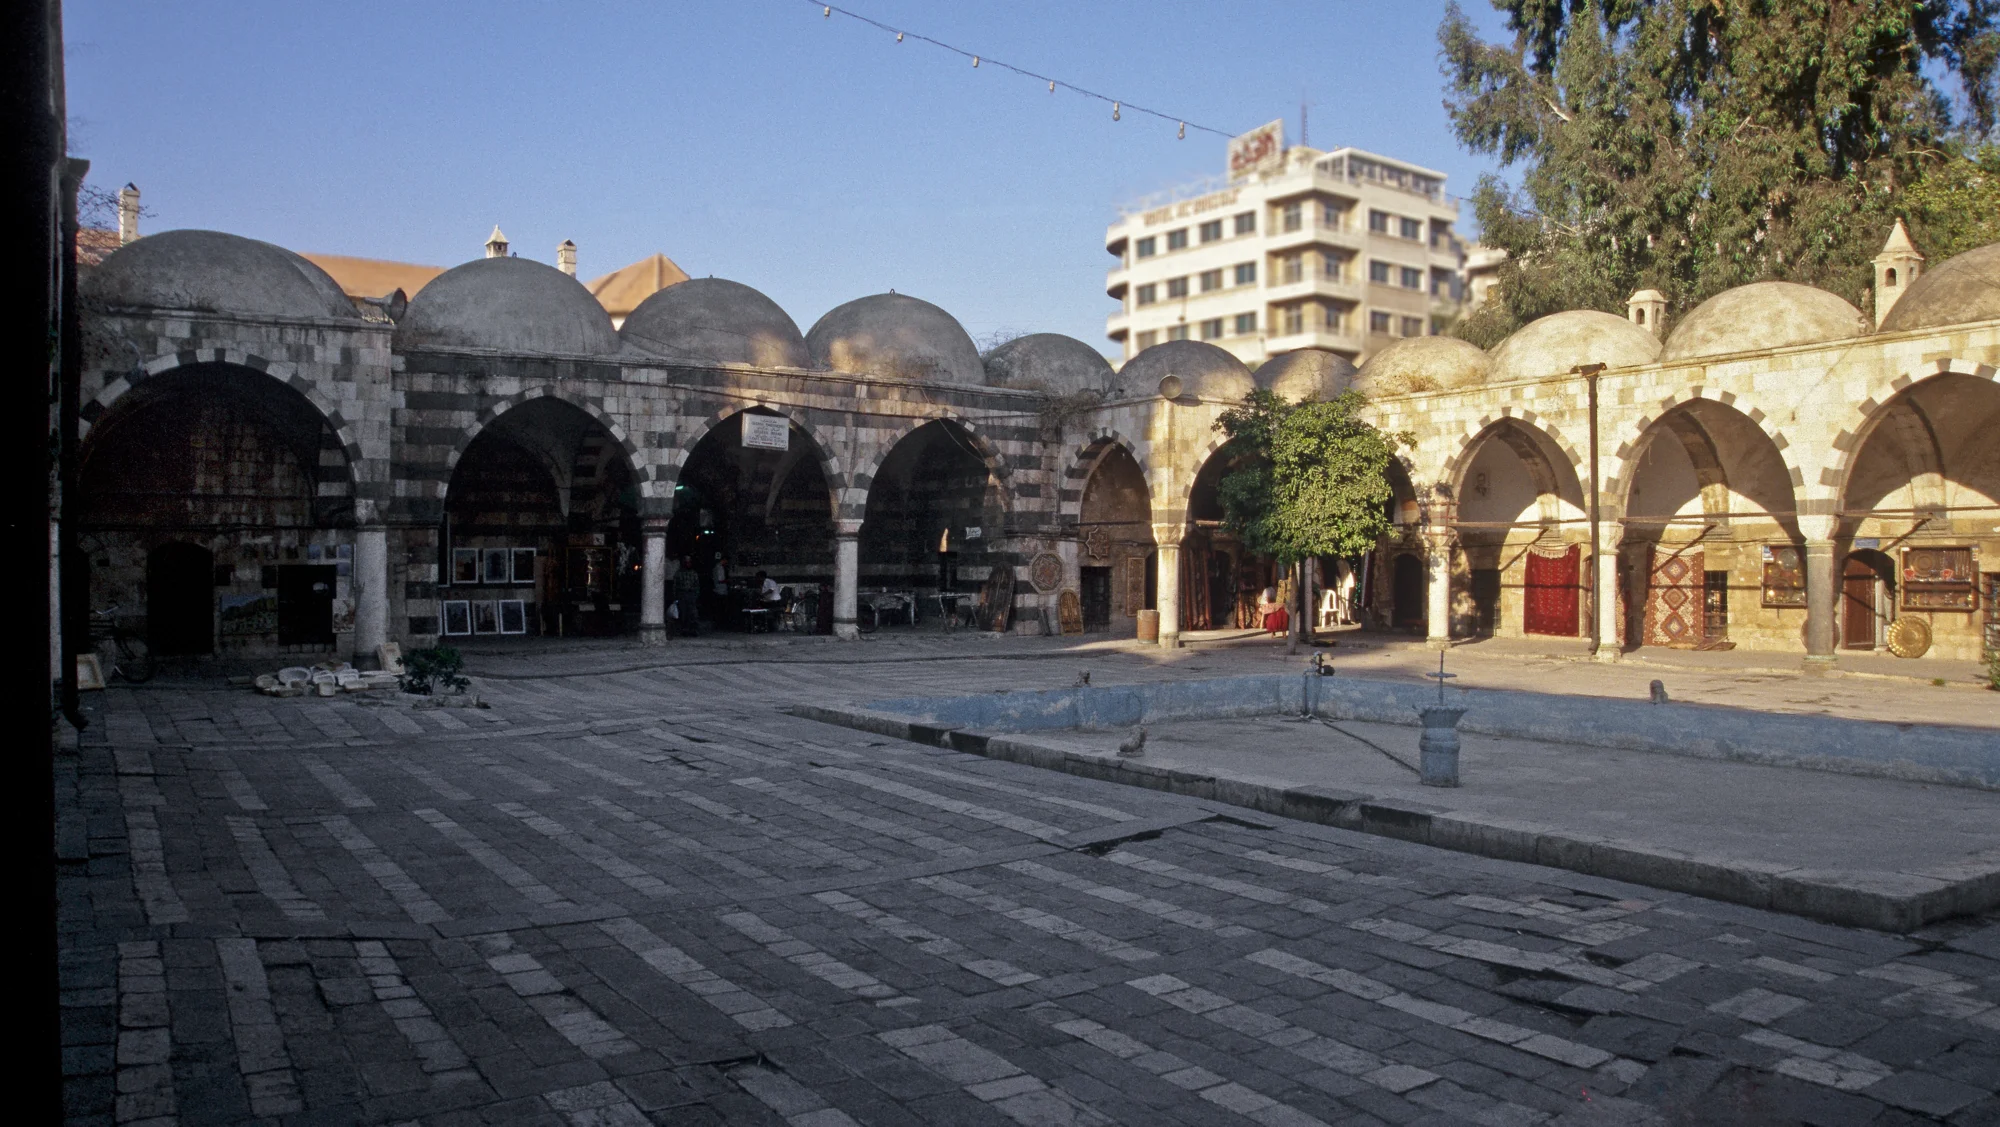 Al-Madrasa as-Salimiyya, Innenhof mit Brunnenbecken und Arkaden